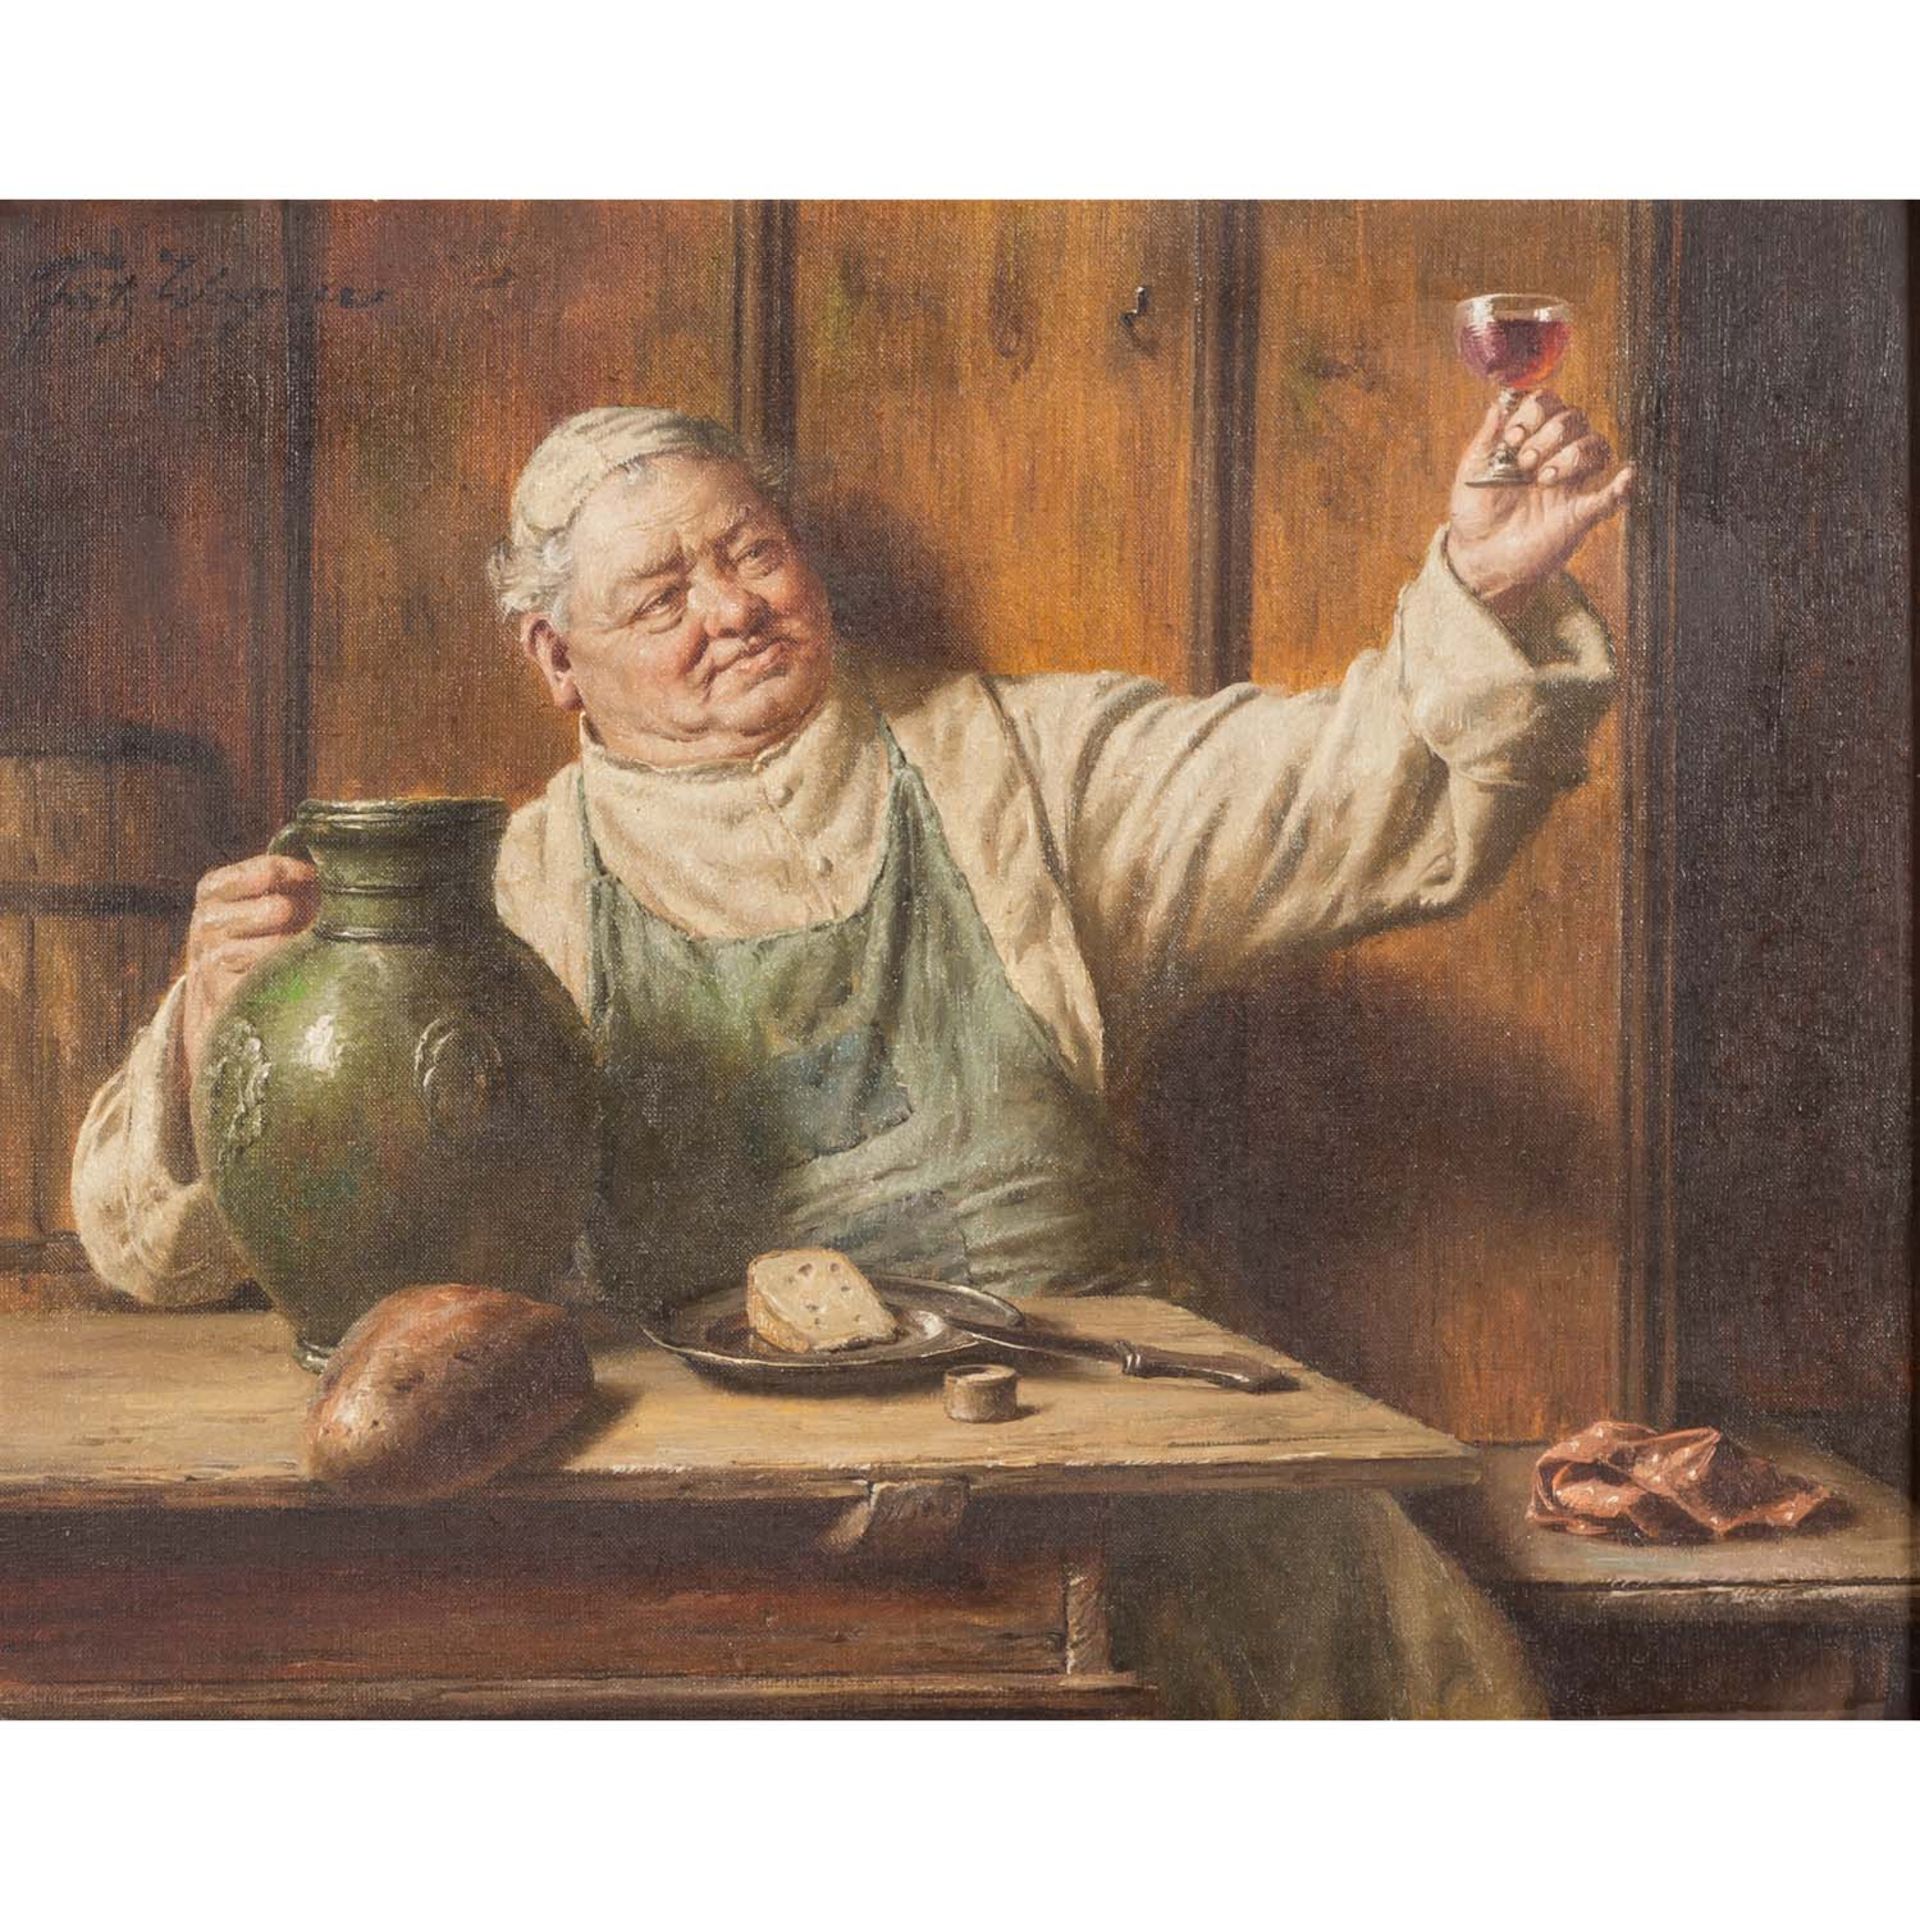 WAGNER, FRITZ (1836-1916) "Mönch am Tisch bewundert seinen Wein"